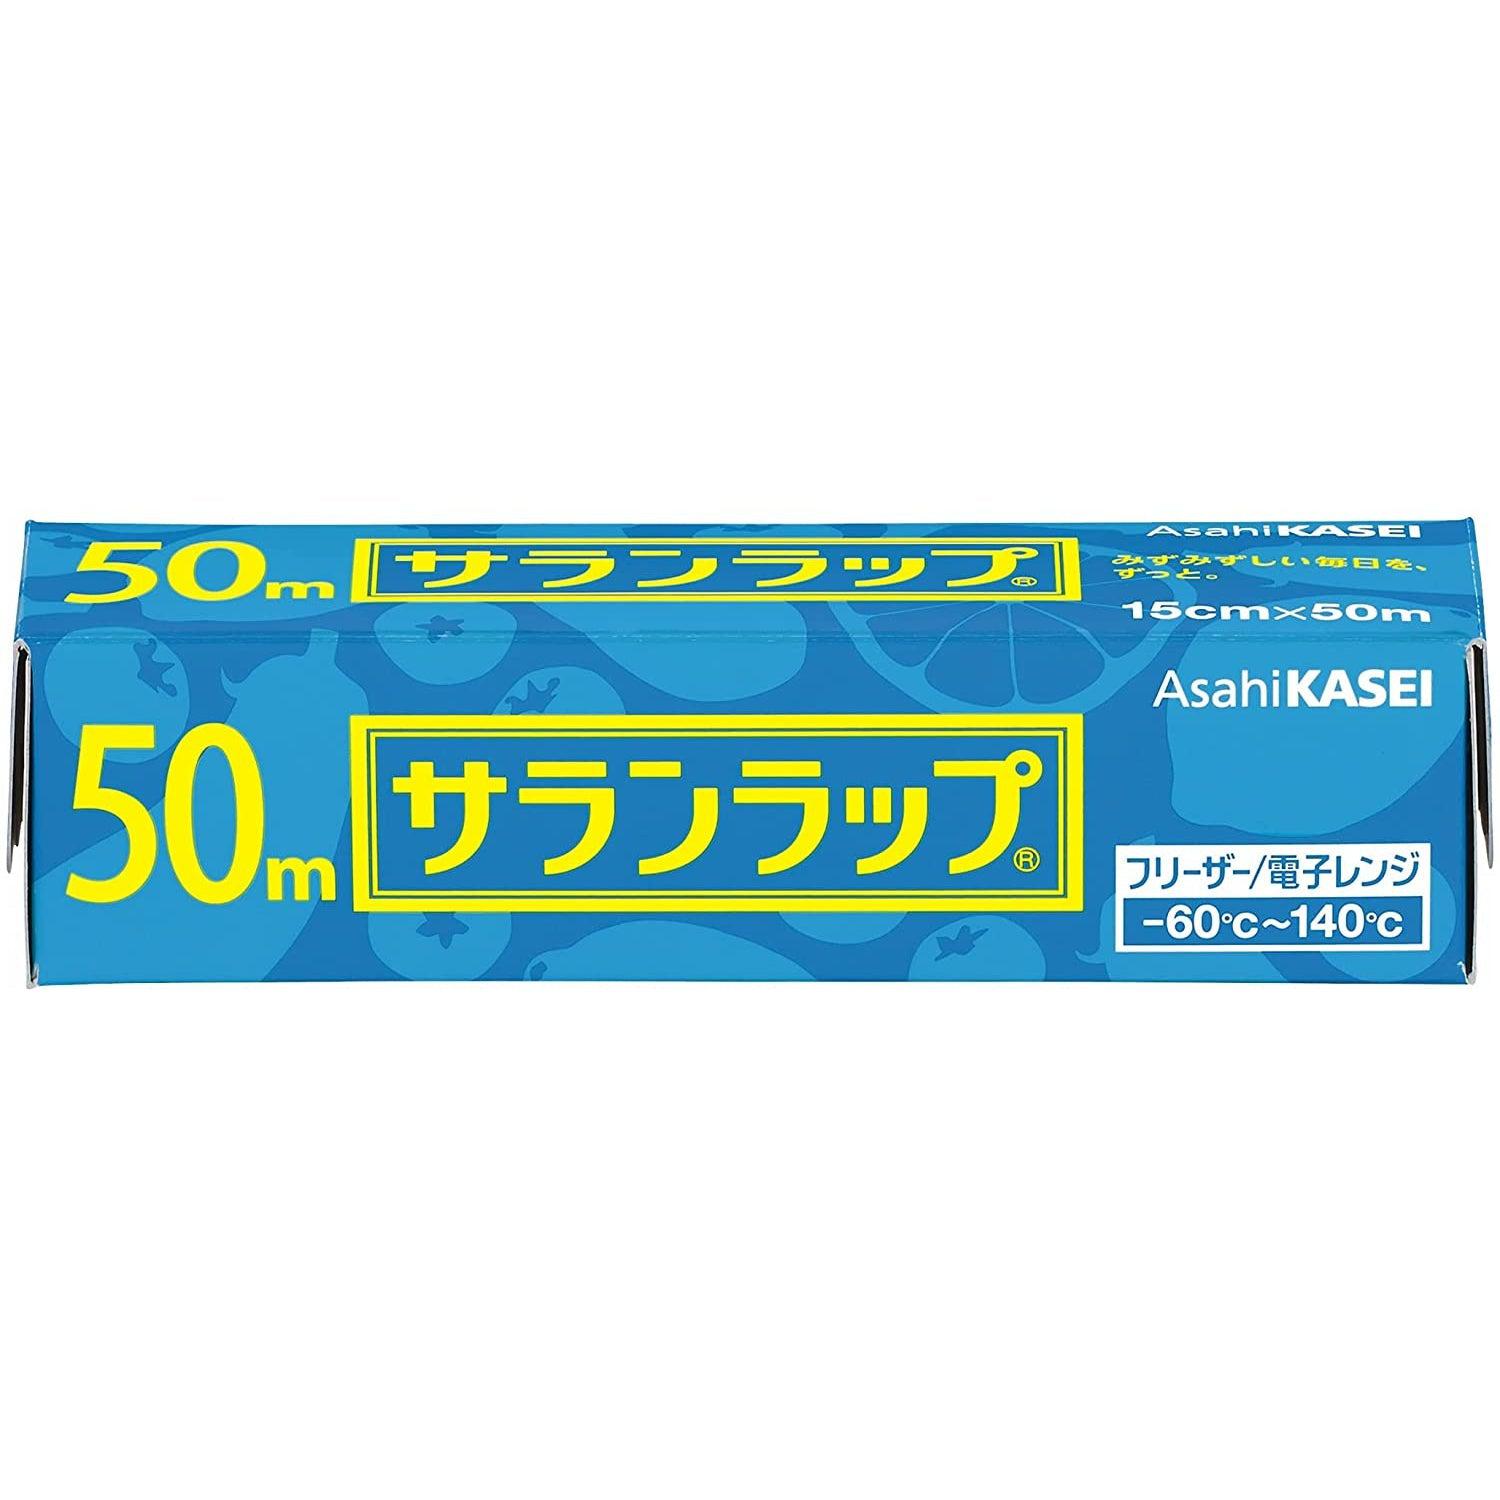 Asahi Kasei Saran Wrap Japanese Plastic Wrap 22cm x 50m